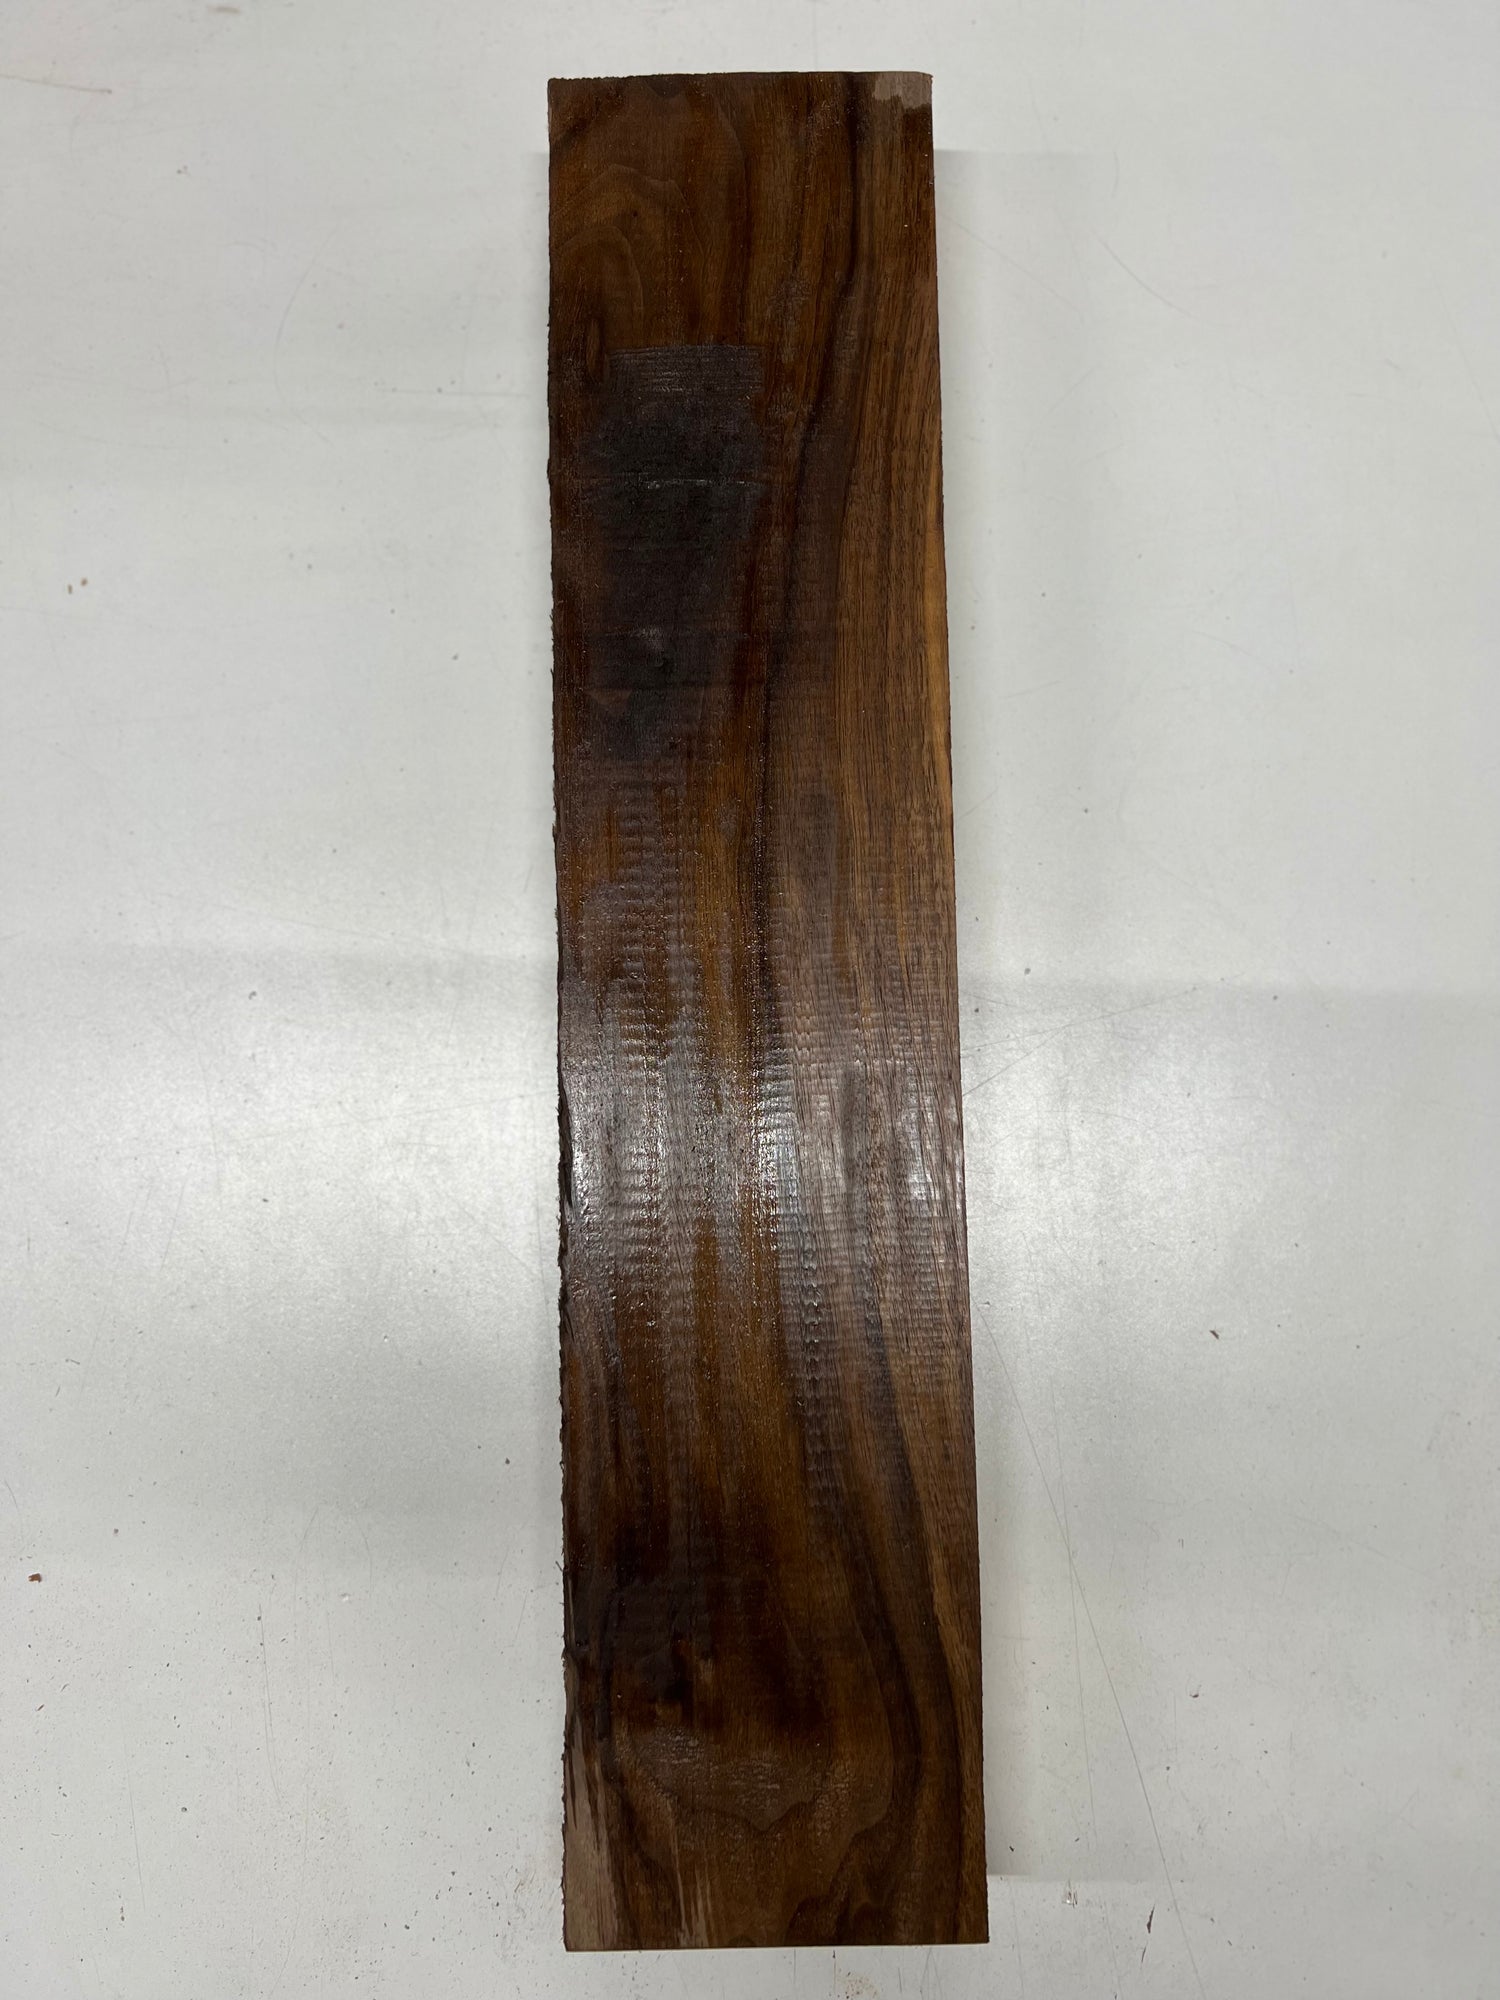 Black Walnut Lumber Board Wood Blank 22&quot;x4-3/4&quot;x1-3/4&quot; 